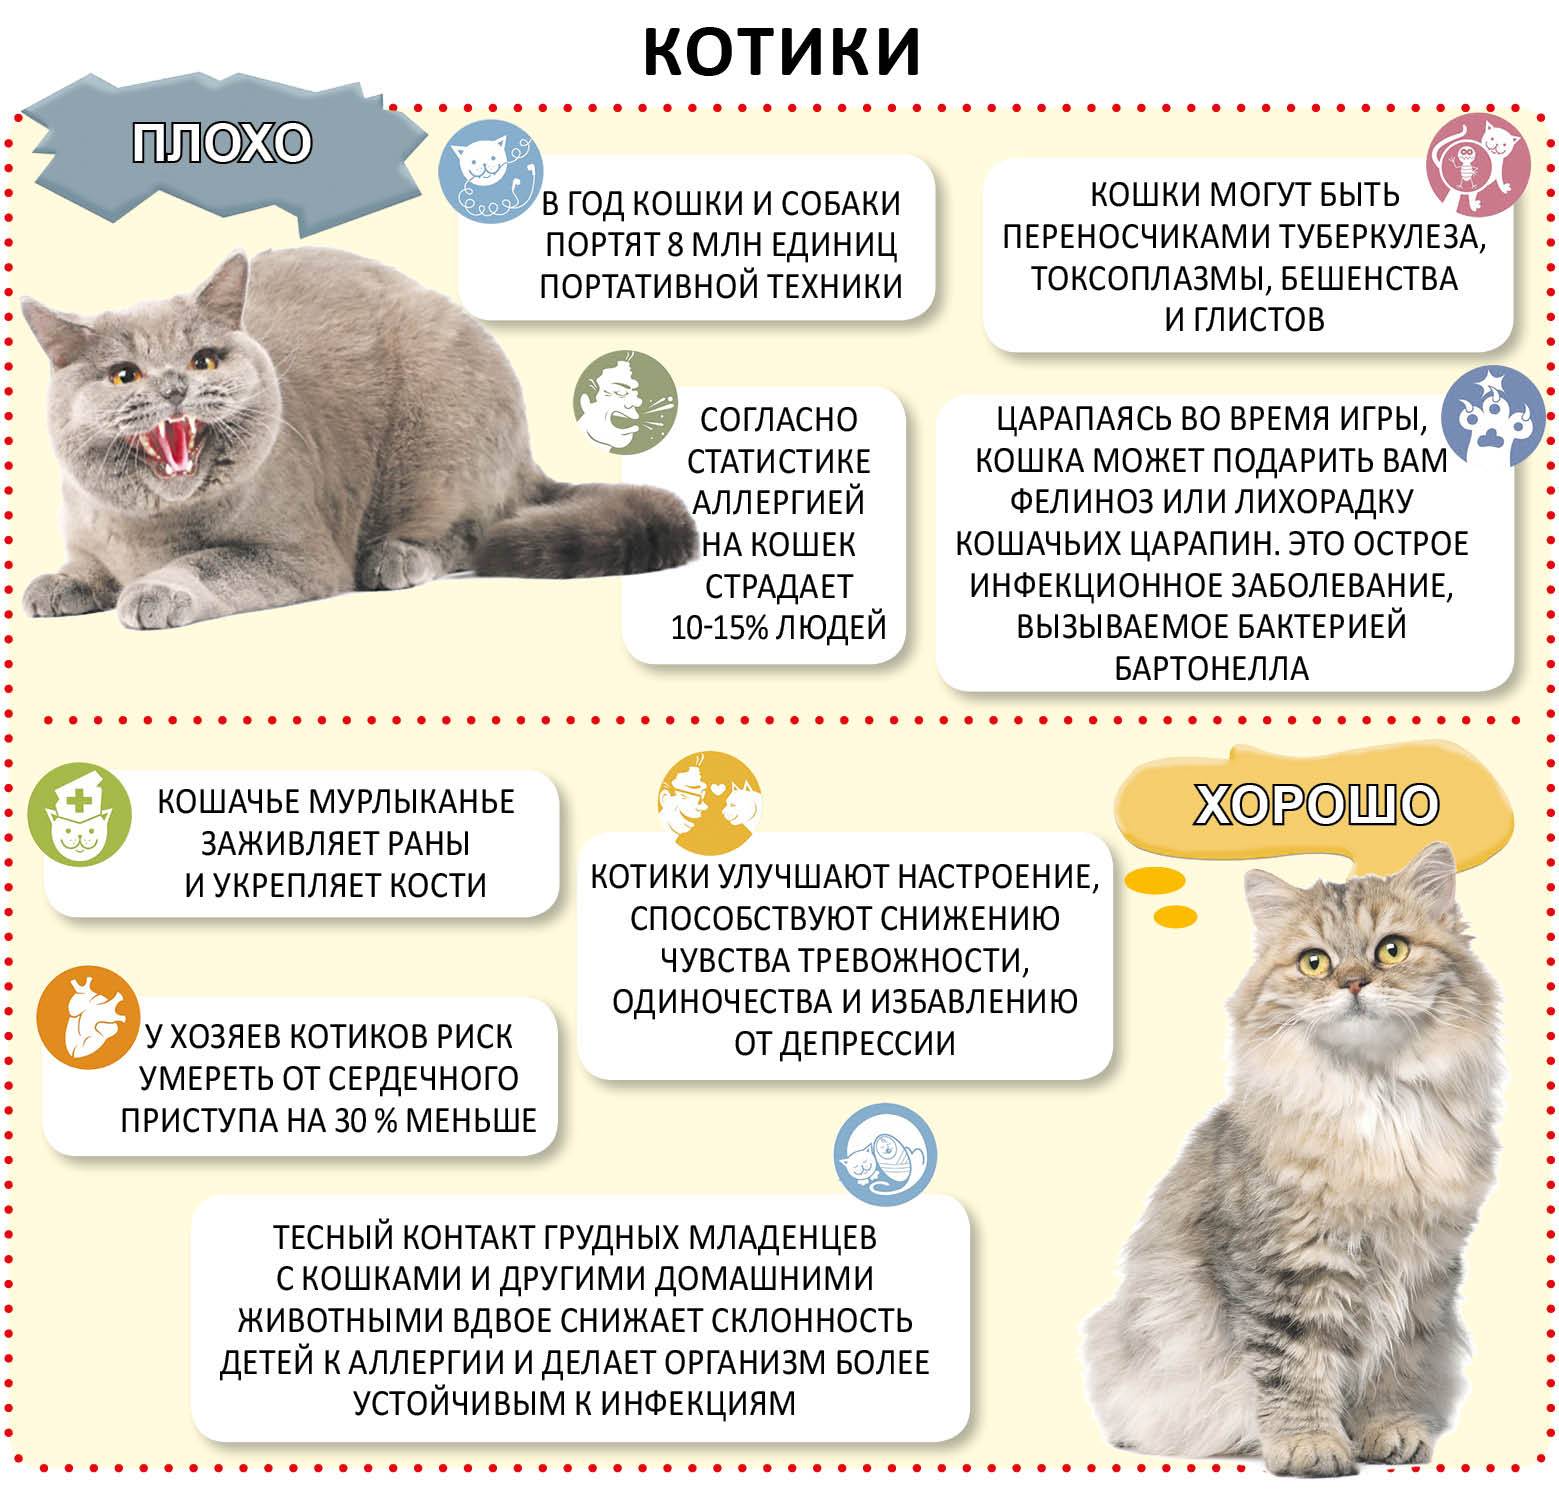 Как правильно выбрать котенка: здорового, хорошего, ласкового, породистого для дома и ребенка - блог о животных - zoo-pet.ru